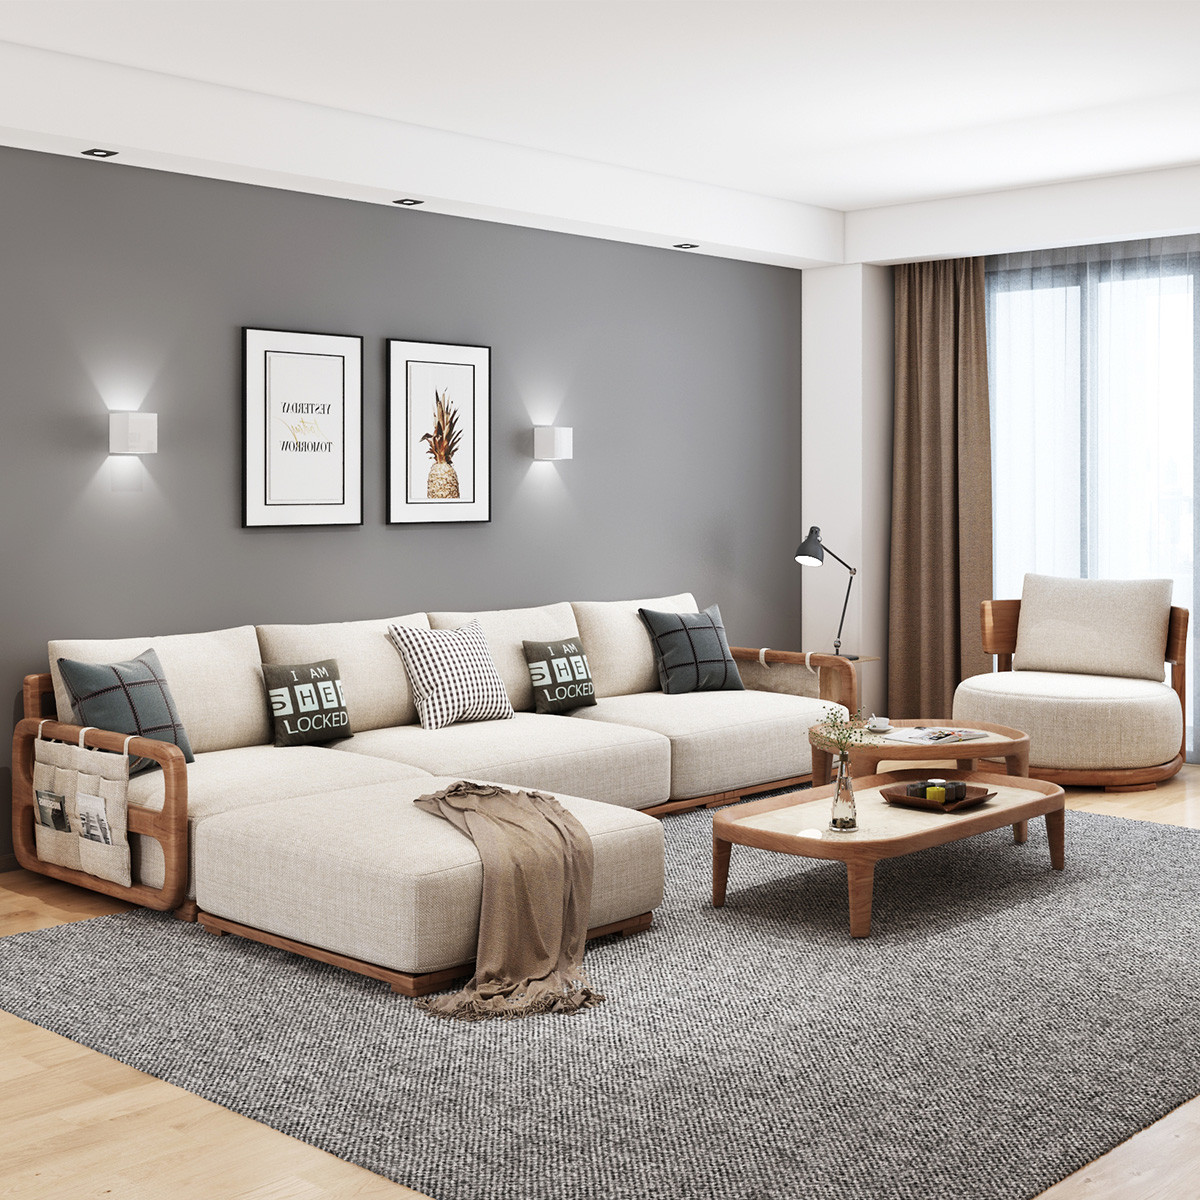 厅沙发样板间北欧简约三人布艺价格质量 哪个牌子比较